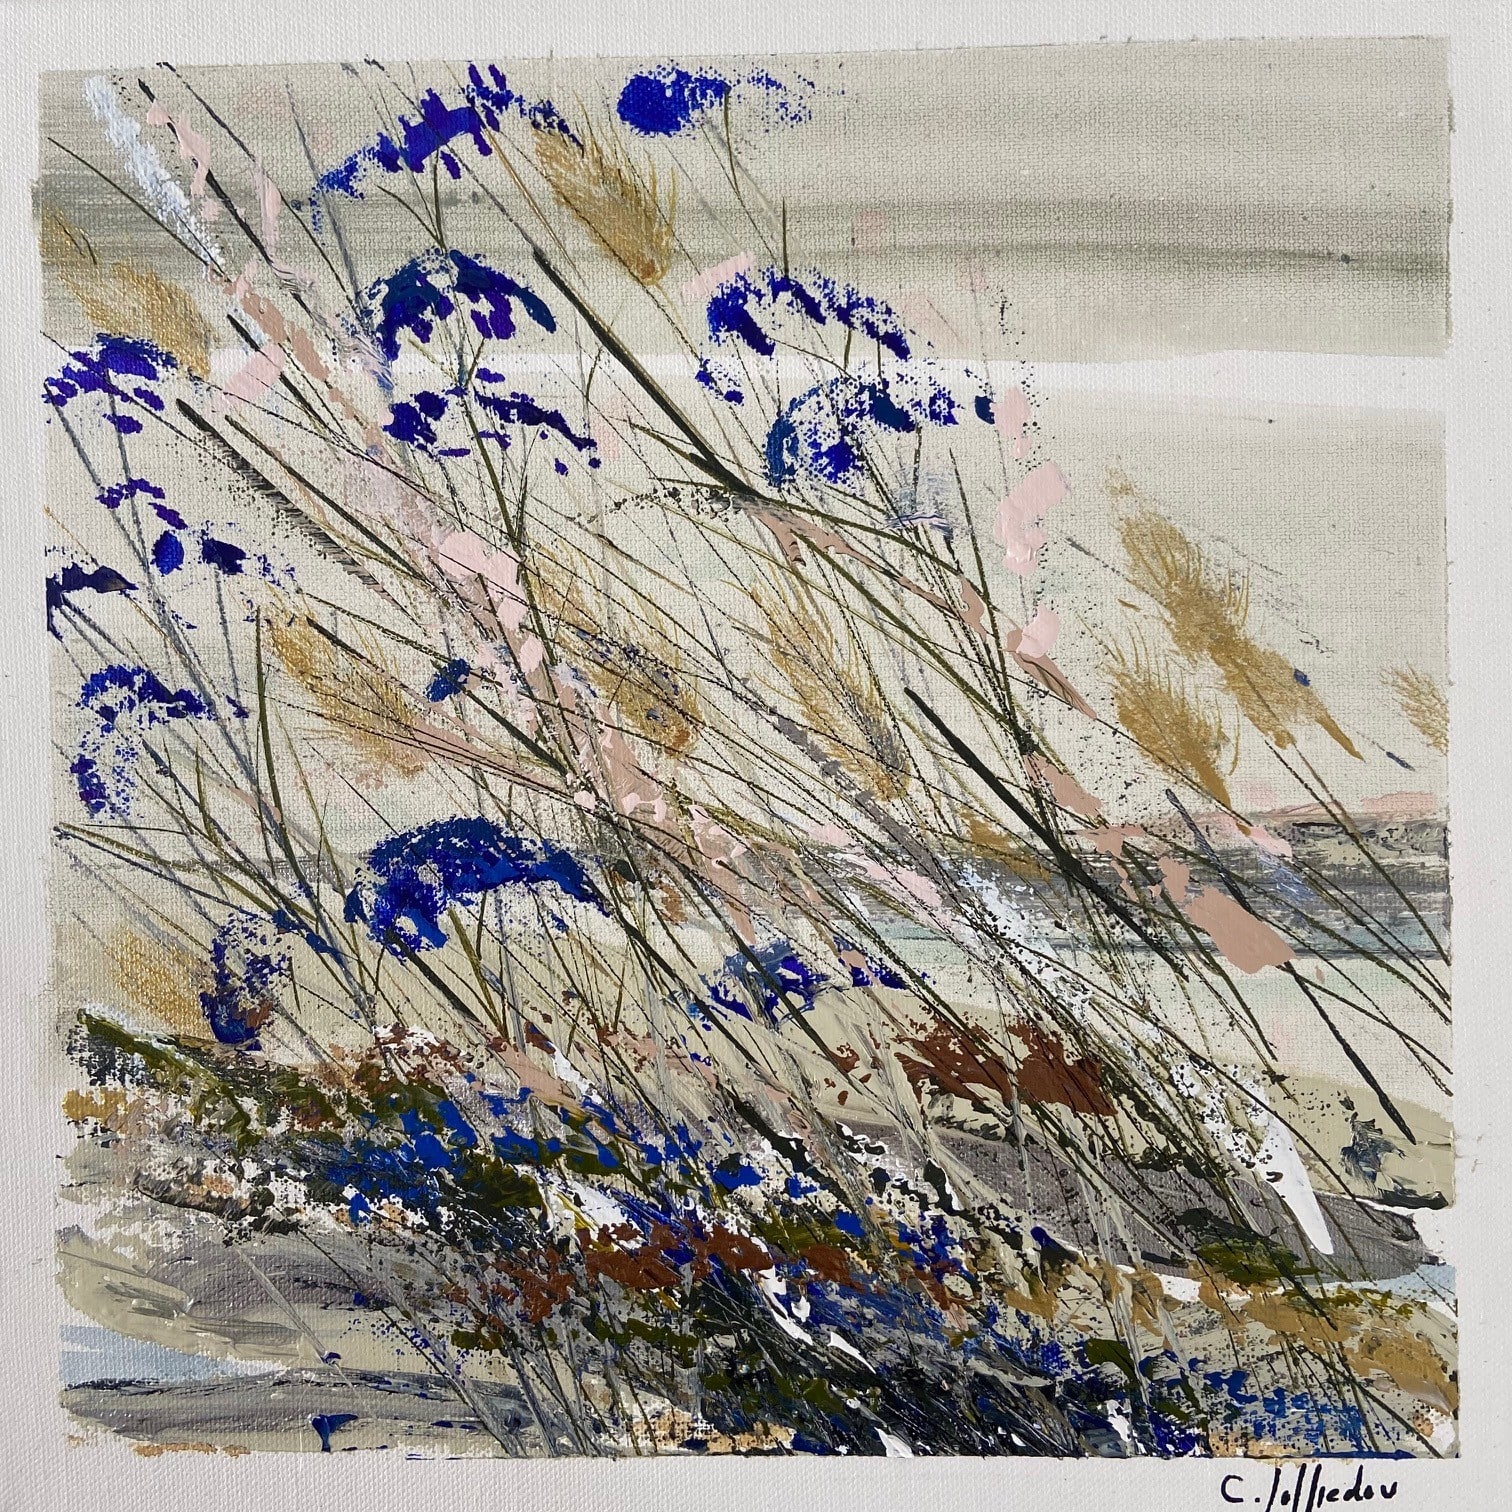 peinture originale dune fleurs bleues camille jaffredou leonie et france eshop d'artistes peintres francais min